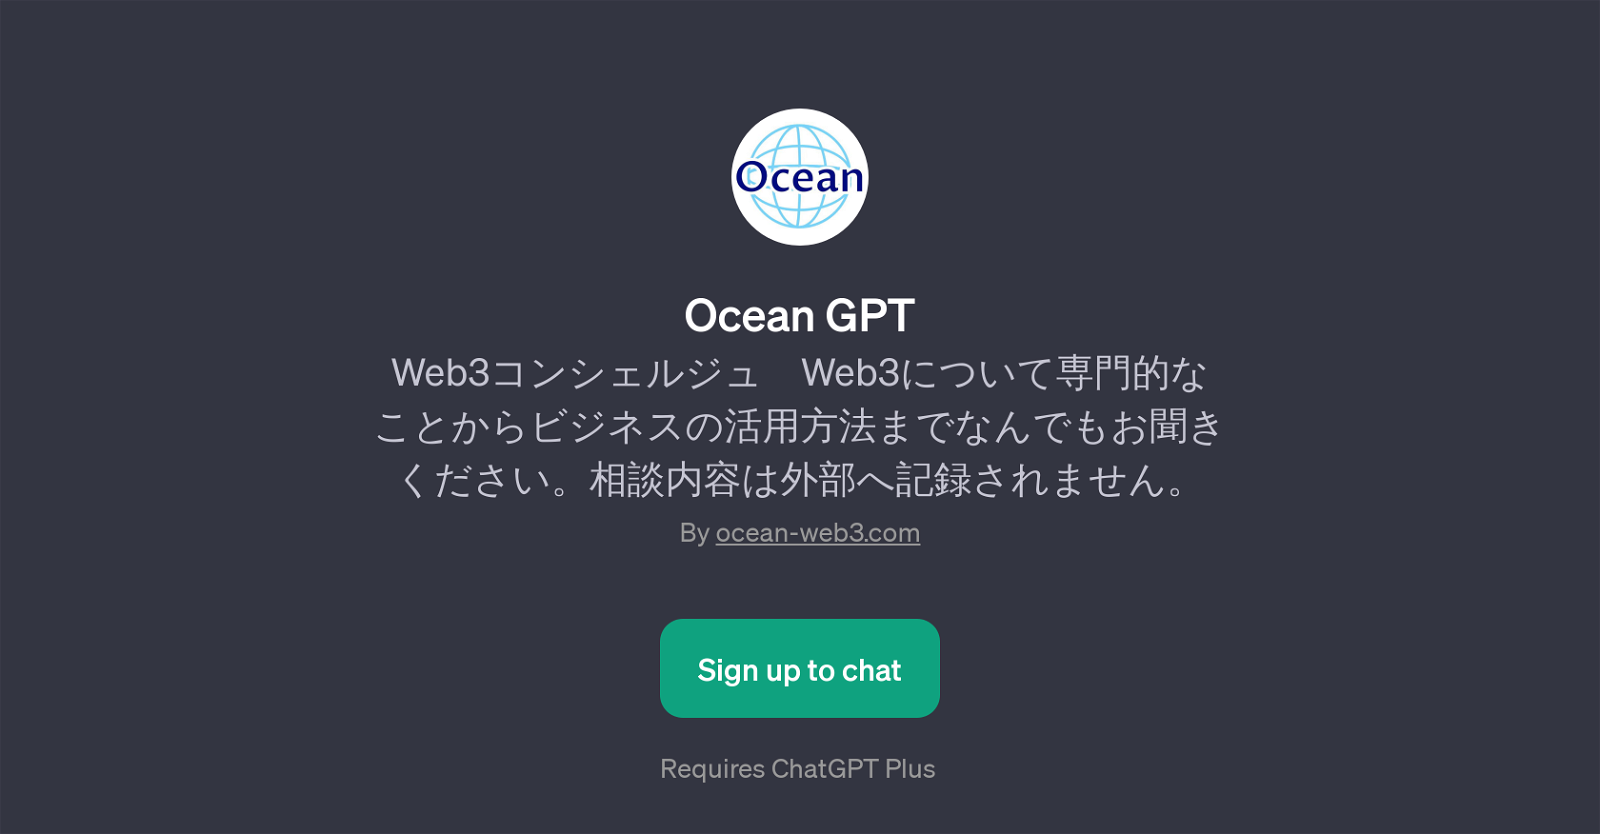 Ocean GPT website